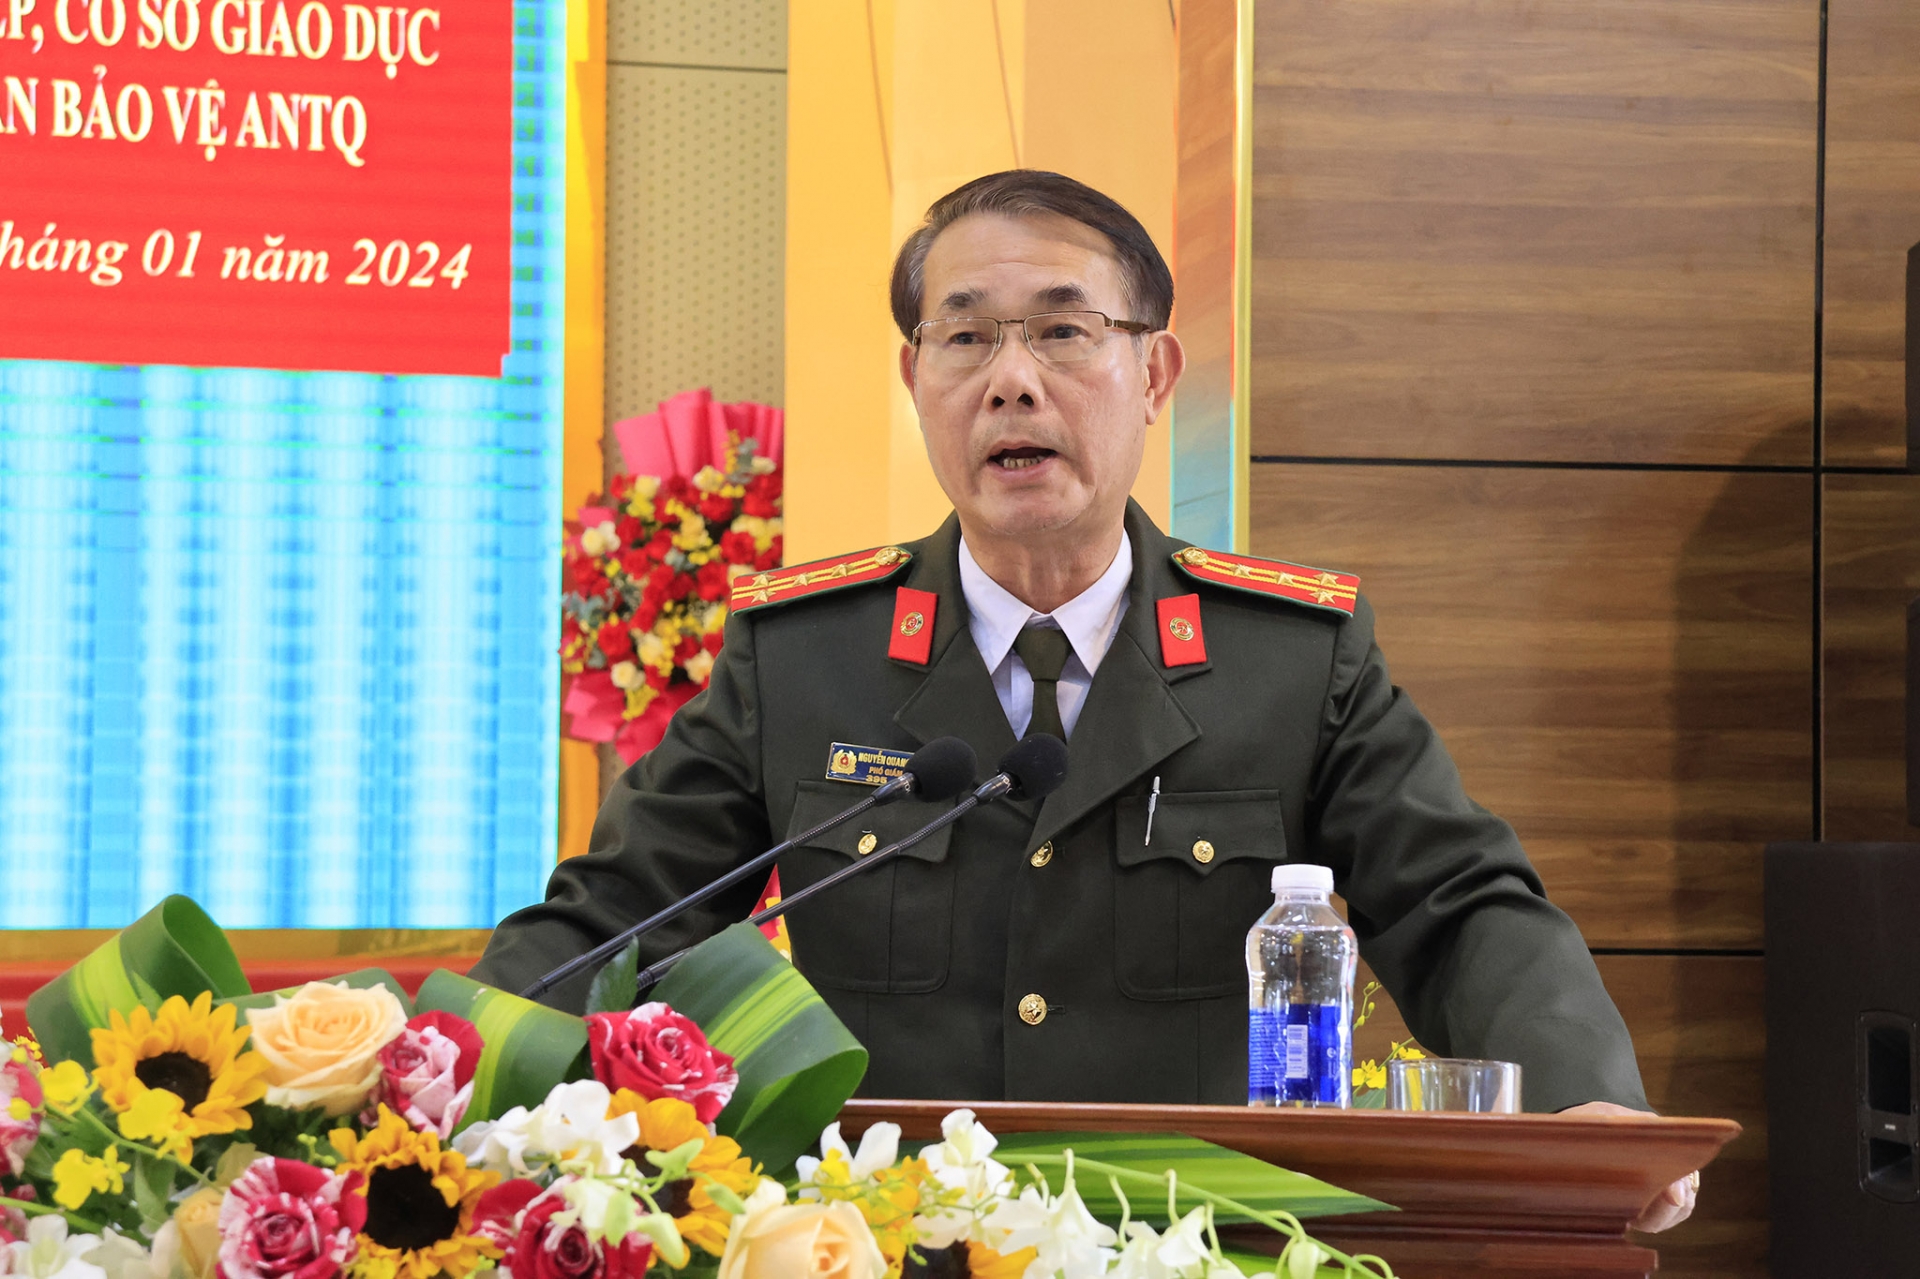 Đại tá Nguyễn Quang Thống - Phó Giám đốc Công an tỉnh phát biểu tại hội nghị